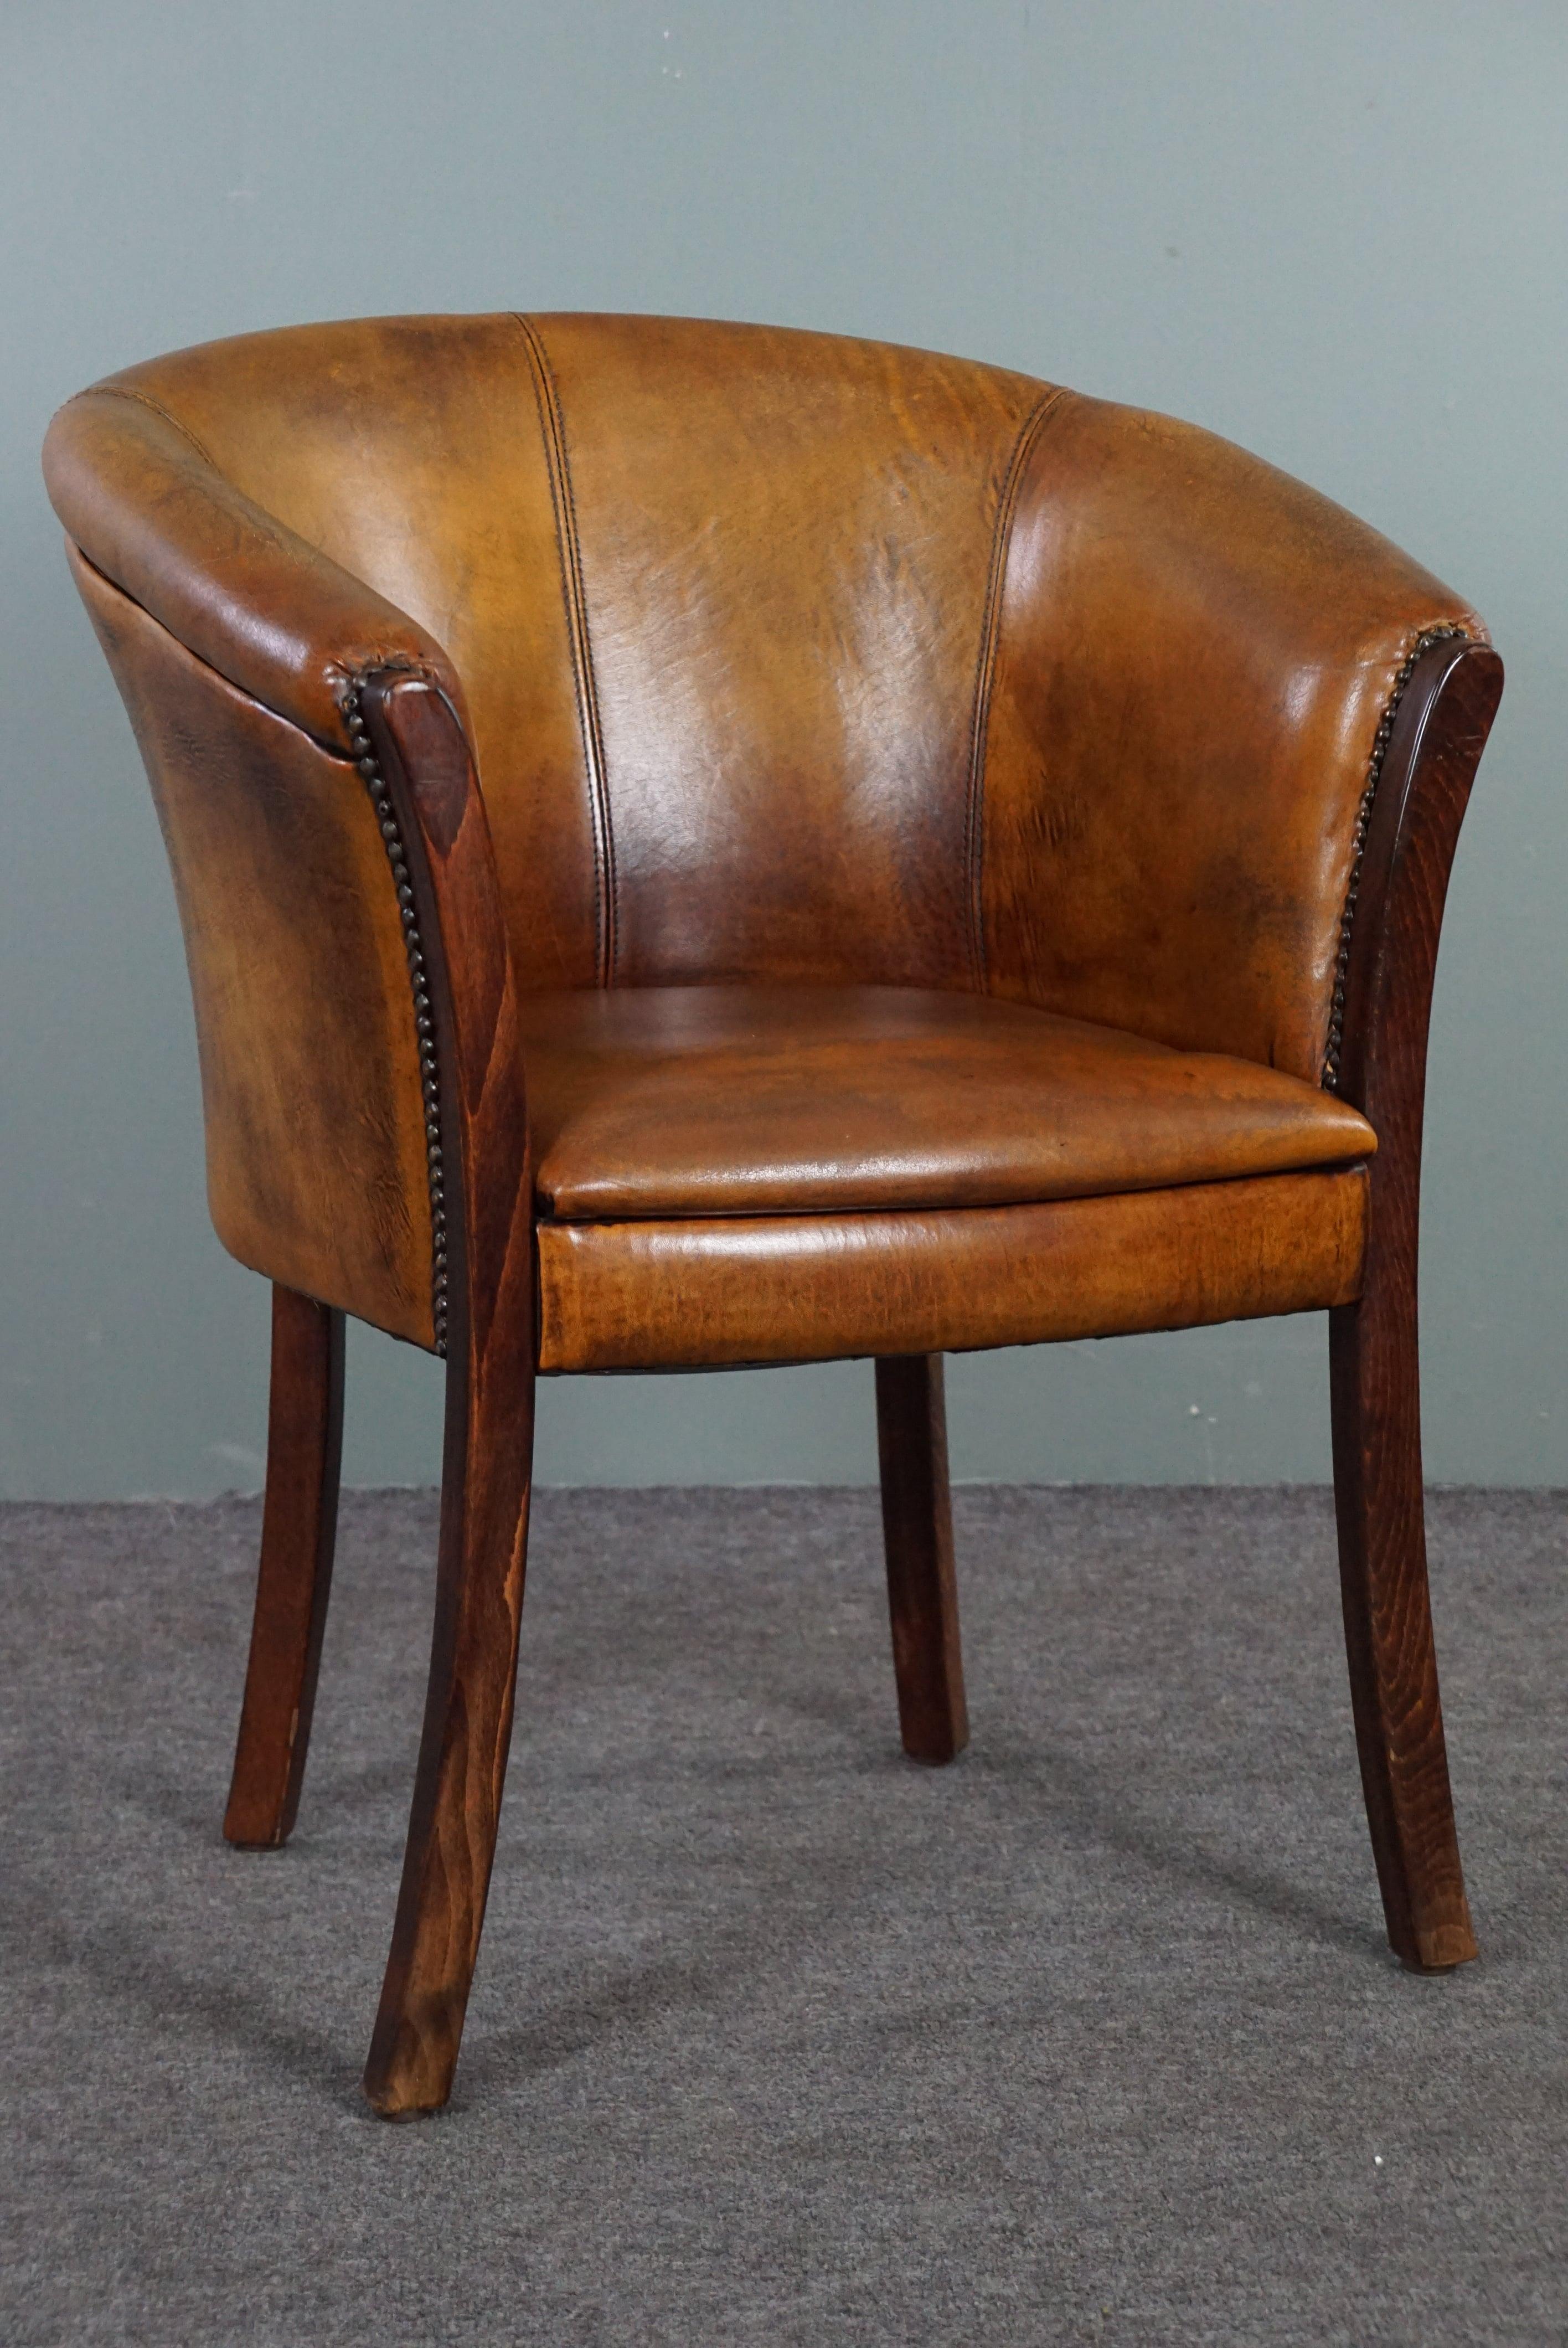 Cette magnifique chaise en cuir de mouton est finie avec des clous décoratifs.

Ce fauteuil en cuir de mouton est multifonctionnel grâce à sa taille modeste et à la hauteur de son assise. Ce fauteuil en peau de mouton peut ainsi être utilisé aussi